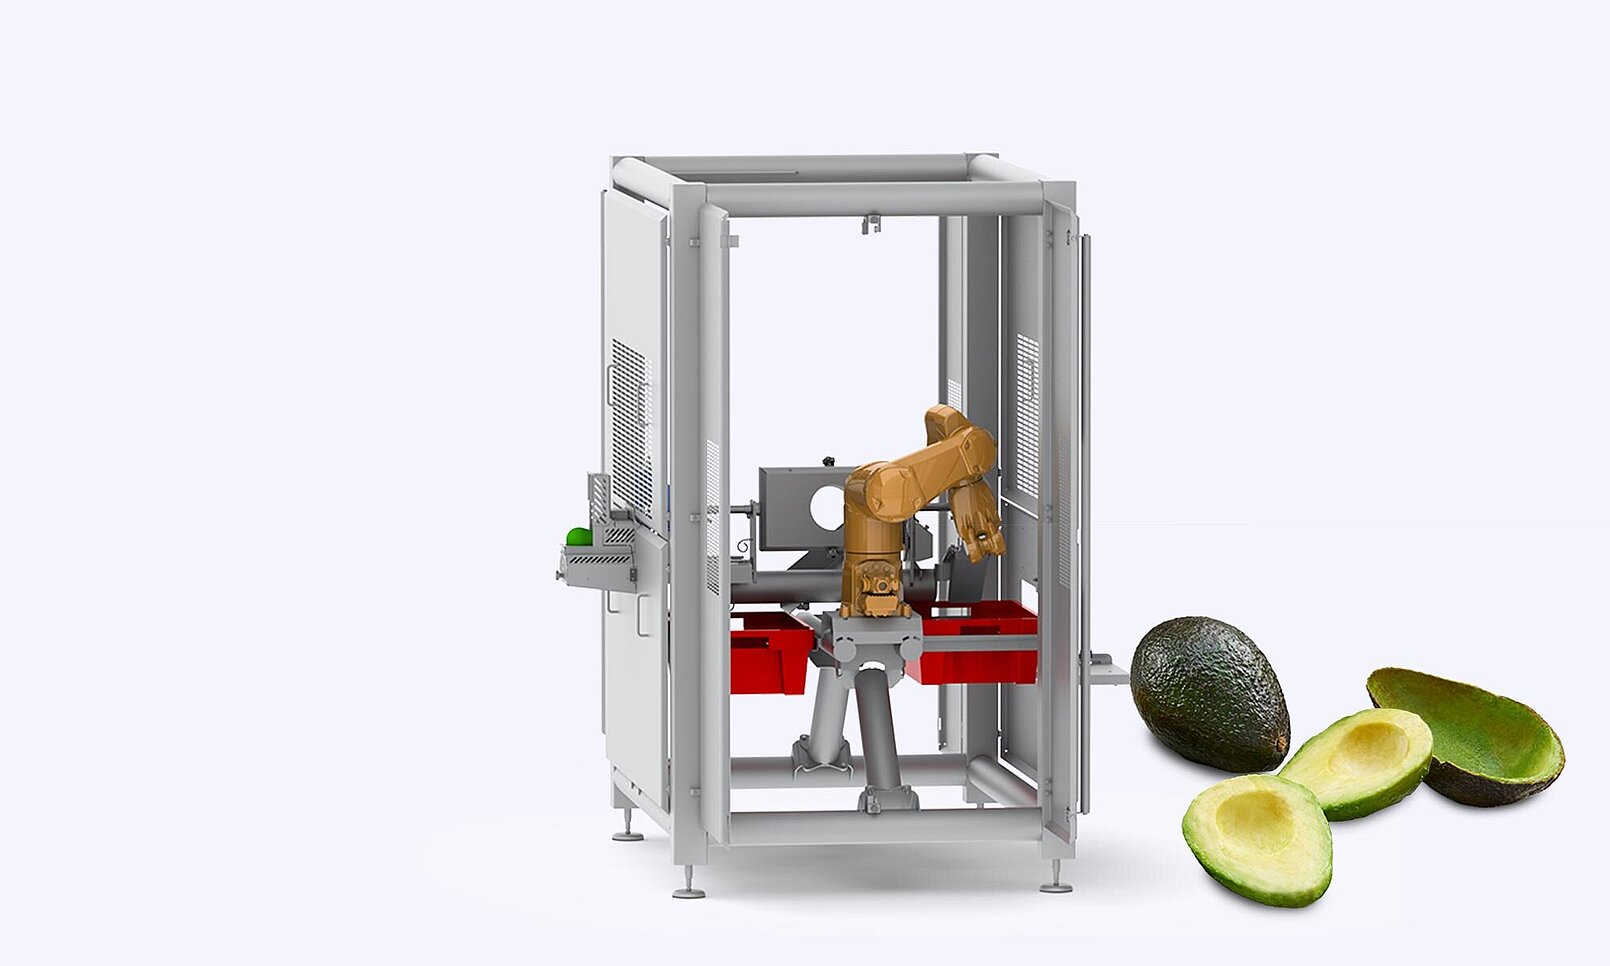 Forschungsprojekt zur Verarbeitung von Avocados mithilfe von Robotern